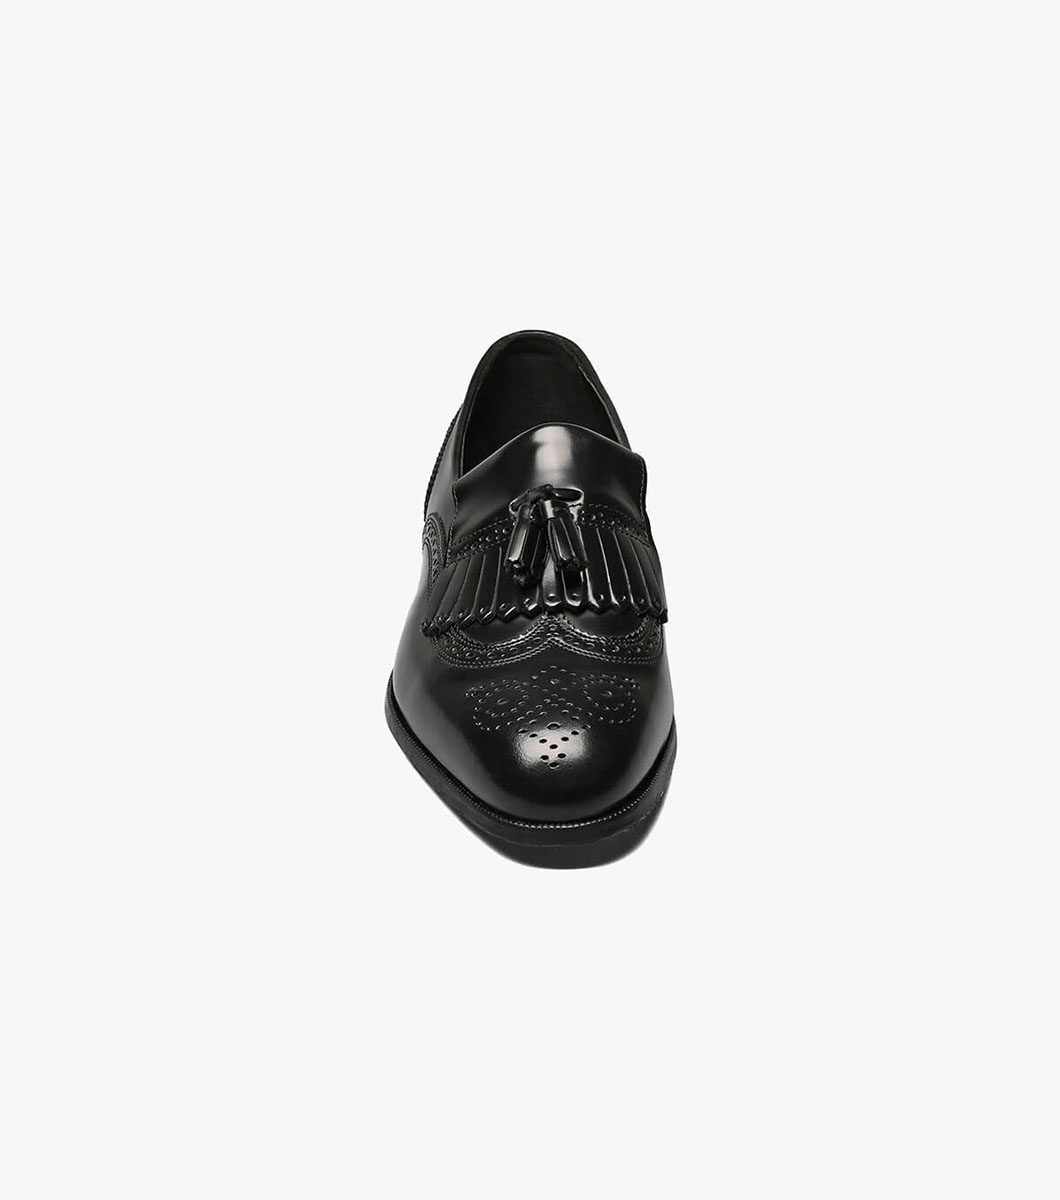 Lexington Wingtip Loafer Men’s Dress Shoes | Florsheim.com